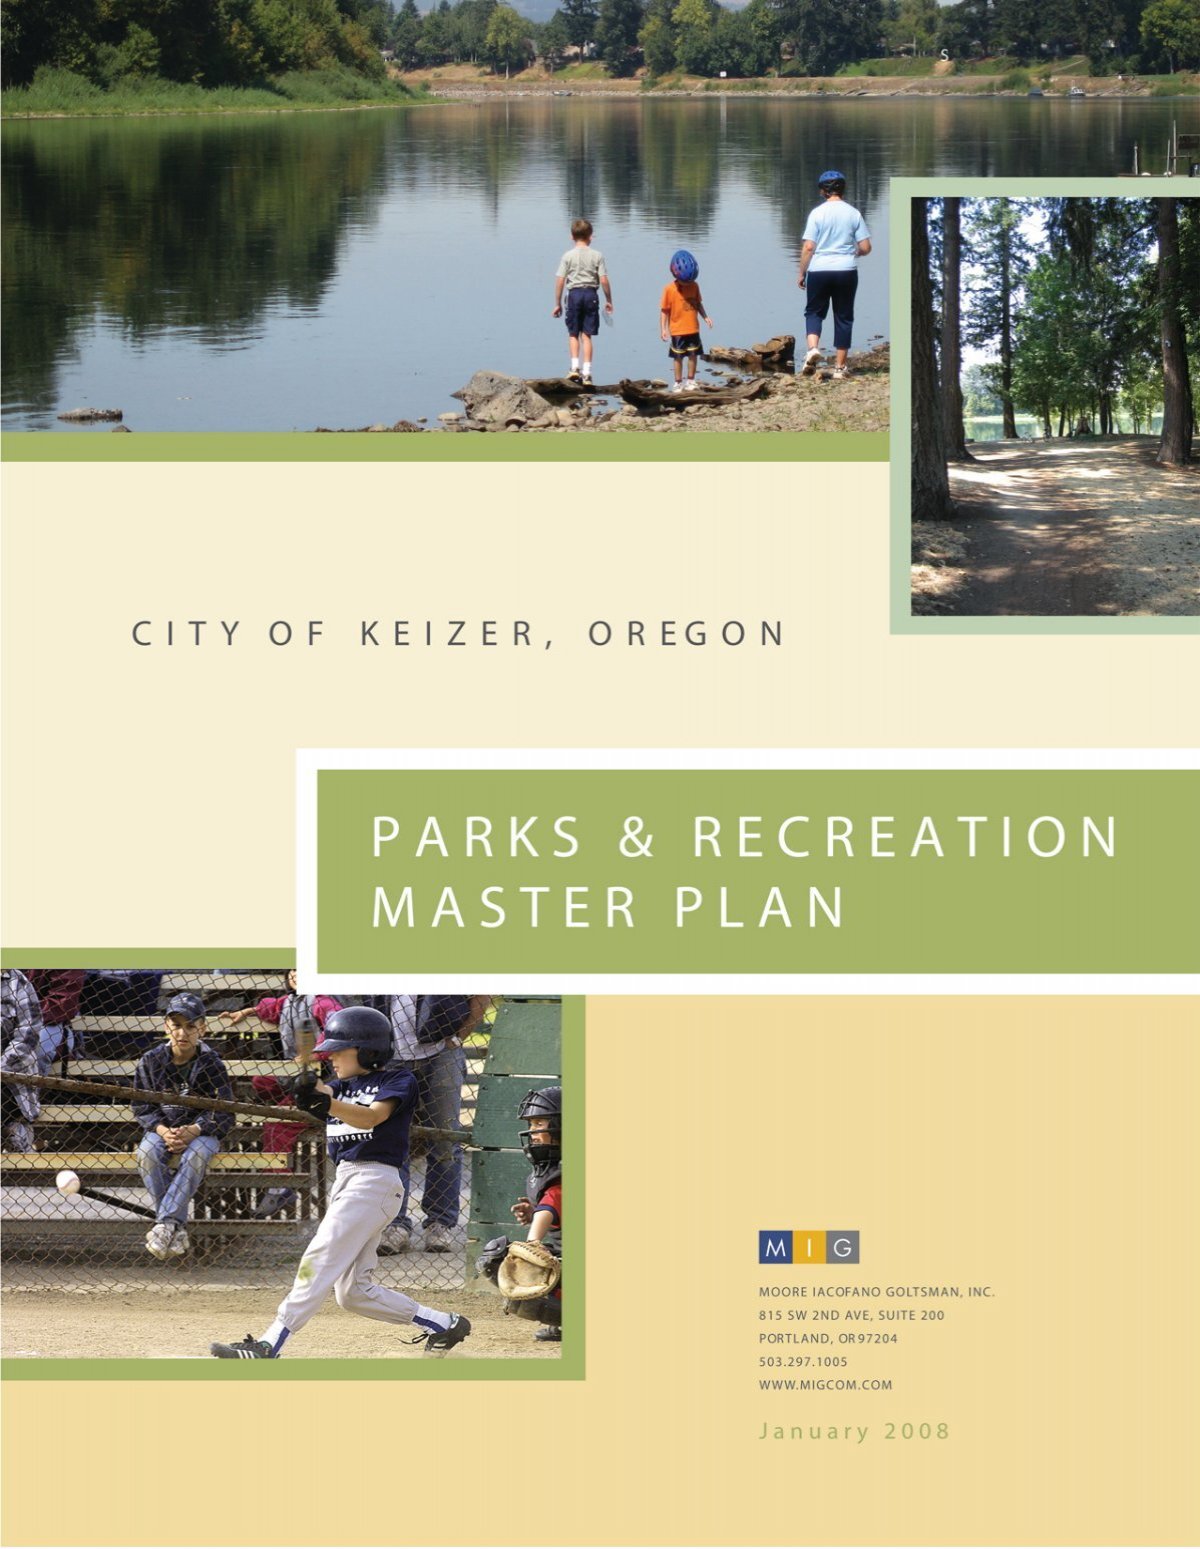 Kế hoạch quản lý công viên và giải trí thảo cổ 2008 - Thành phố Keizer: Kế hoạch quản lý công viên và giải trí thảo cổ 2008 của thành phố Keizer là một tài liệu quan trọng giúp cho quản lý công viên trở nên hiệu quả hơn. Các chi tiết về quy hoạch và hoạt động được đặc tả rõ ràng, giúp cho các bạn hiểu rõ hơn về công viên và có thể quản lý nó một cách tốt nhất.